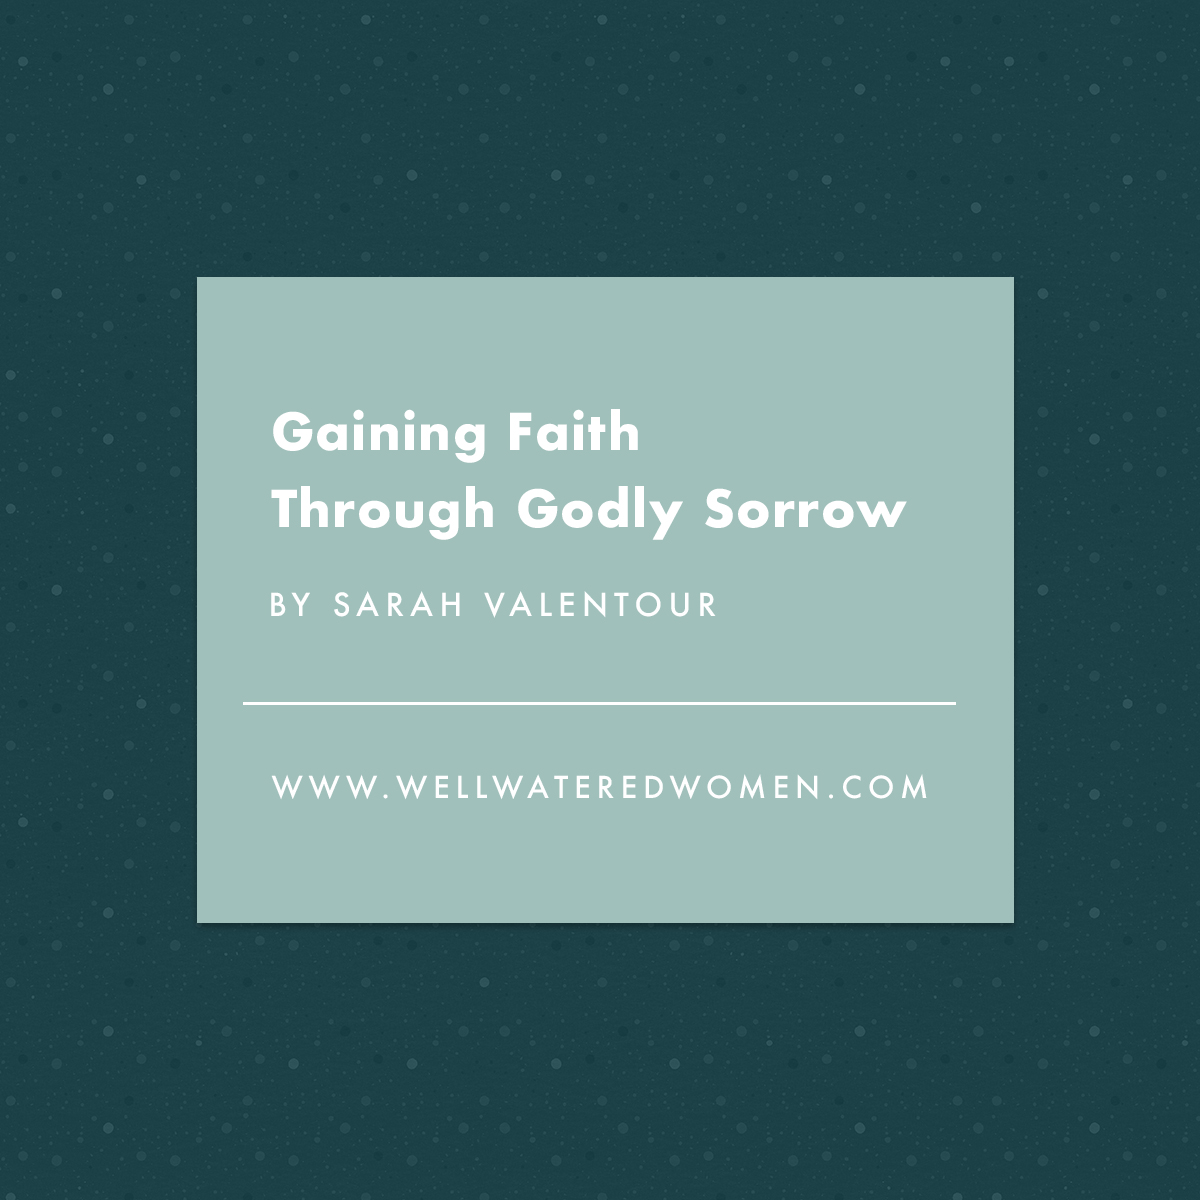 Gaining Faith Through Godly Sorrow